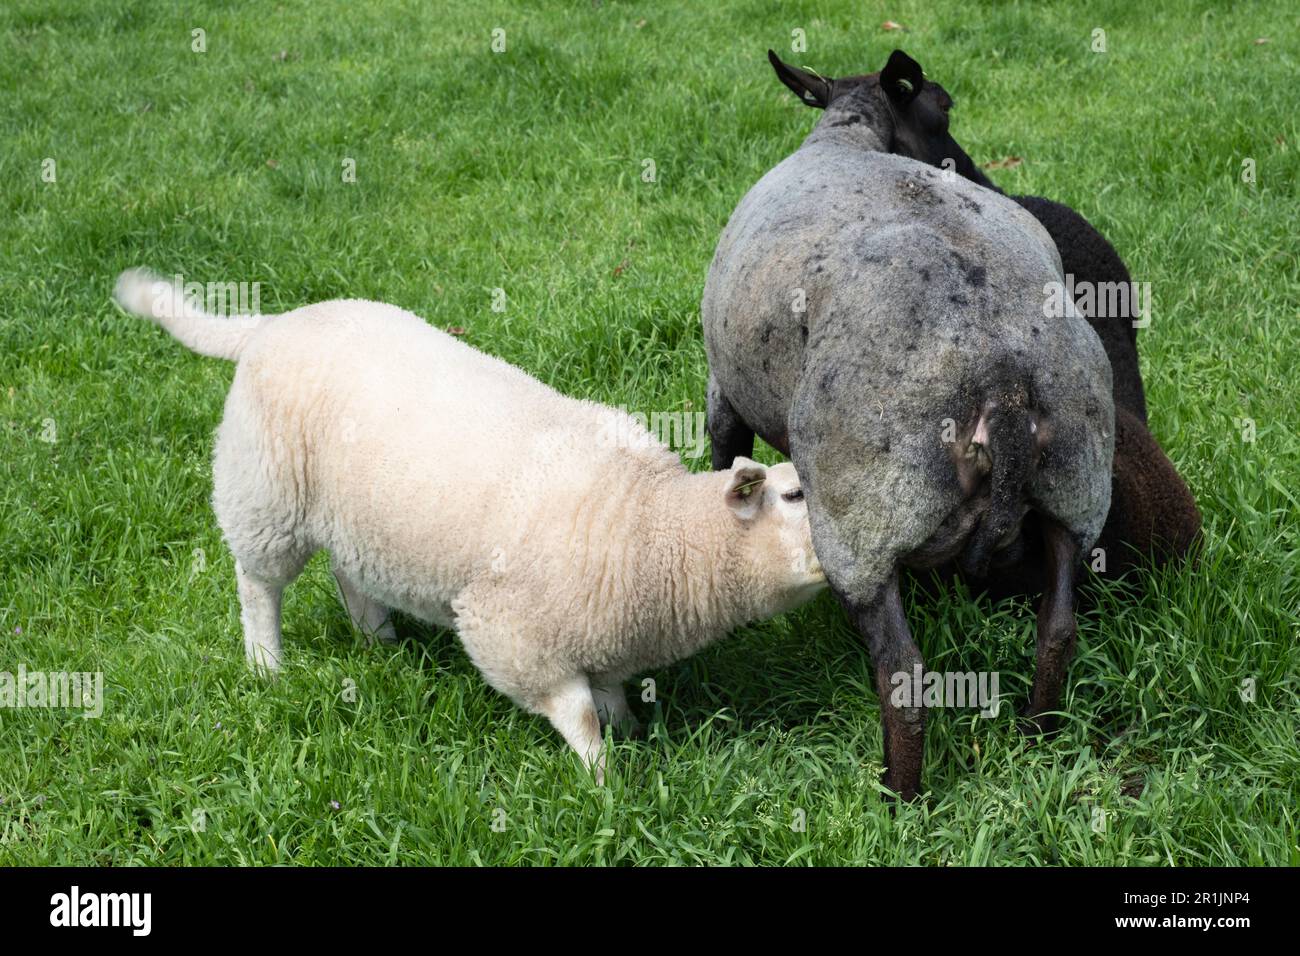 Les agneaux plus âgés (noir et blanc) boivent avec une brebis noire dans un pâturage vert Banque D'Images